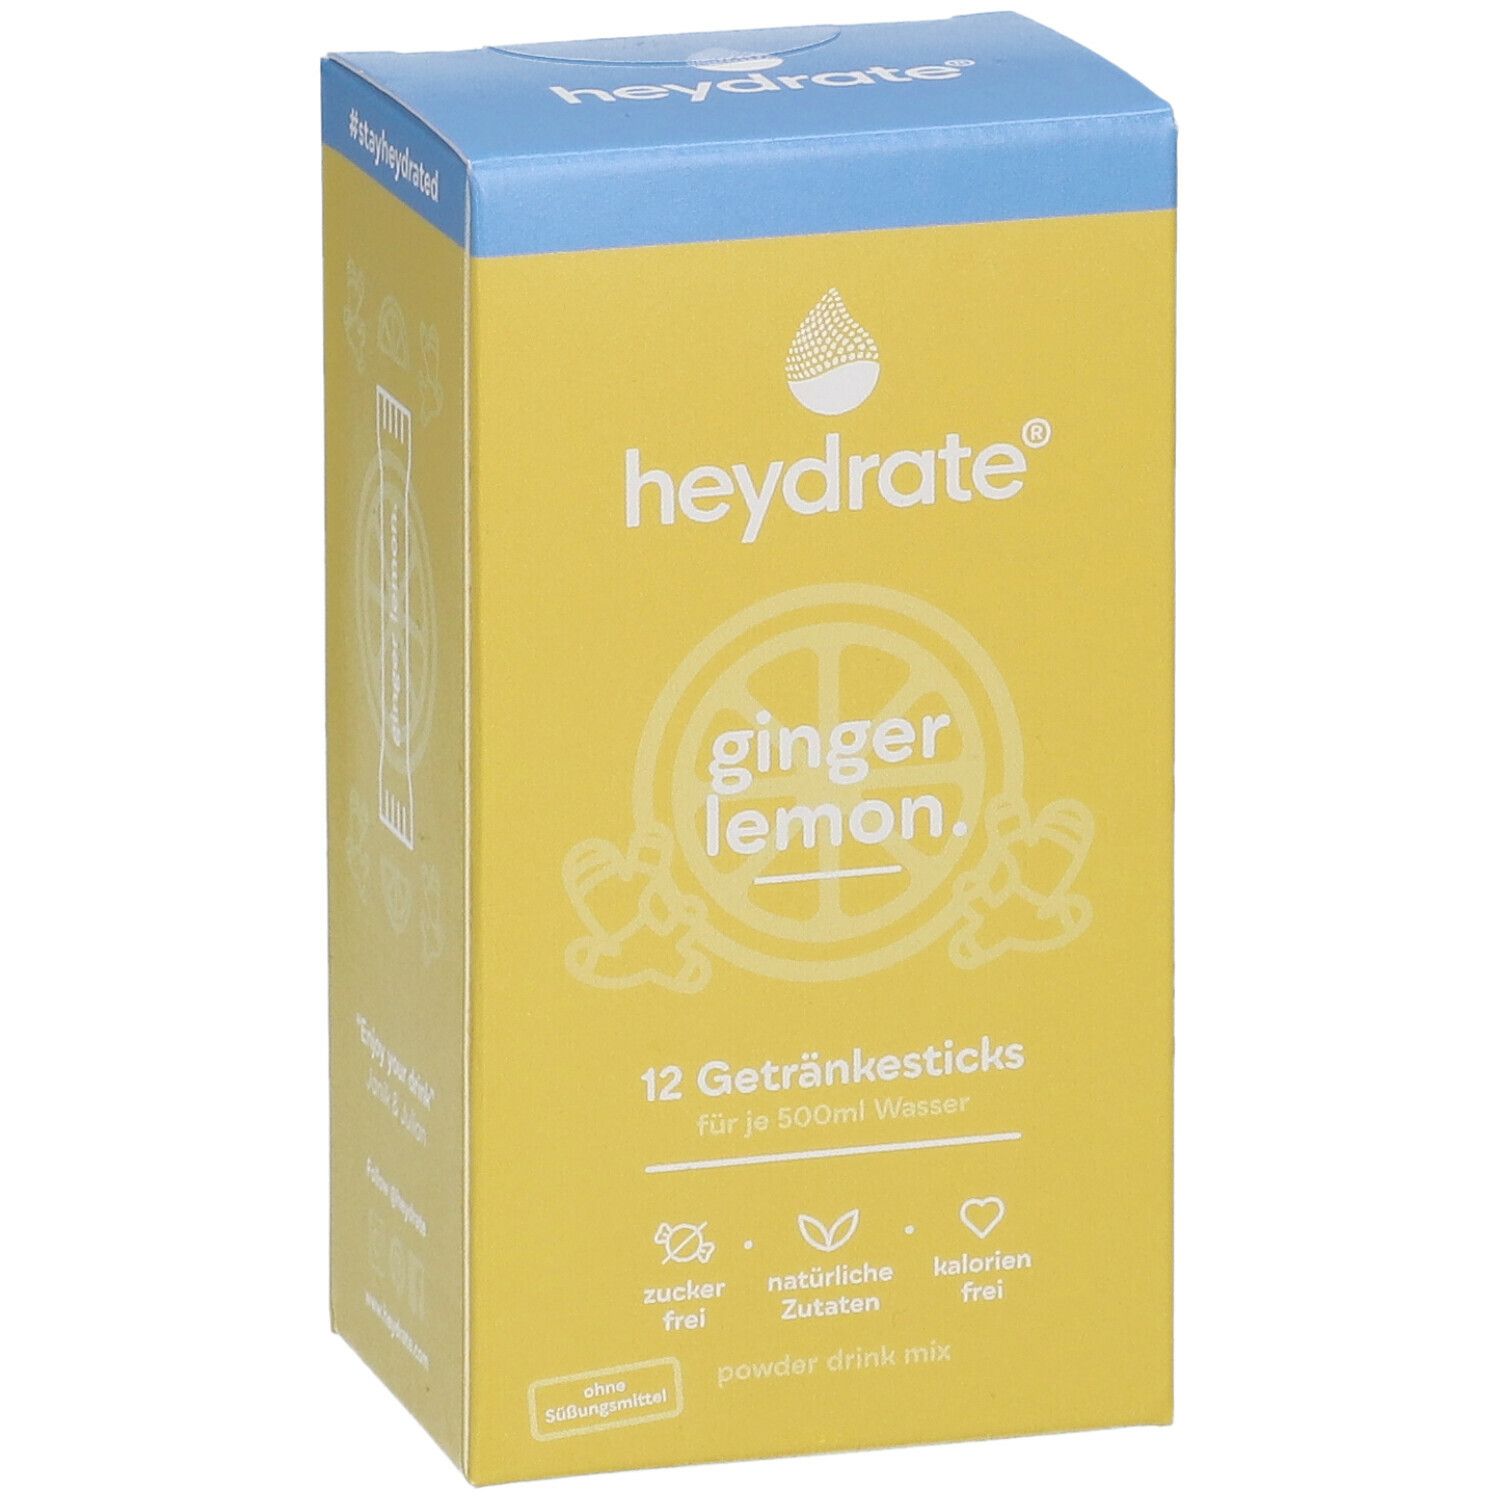 heydrate® ginger lemon